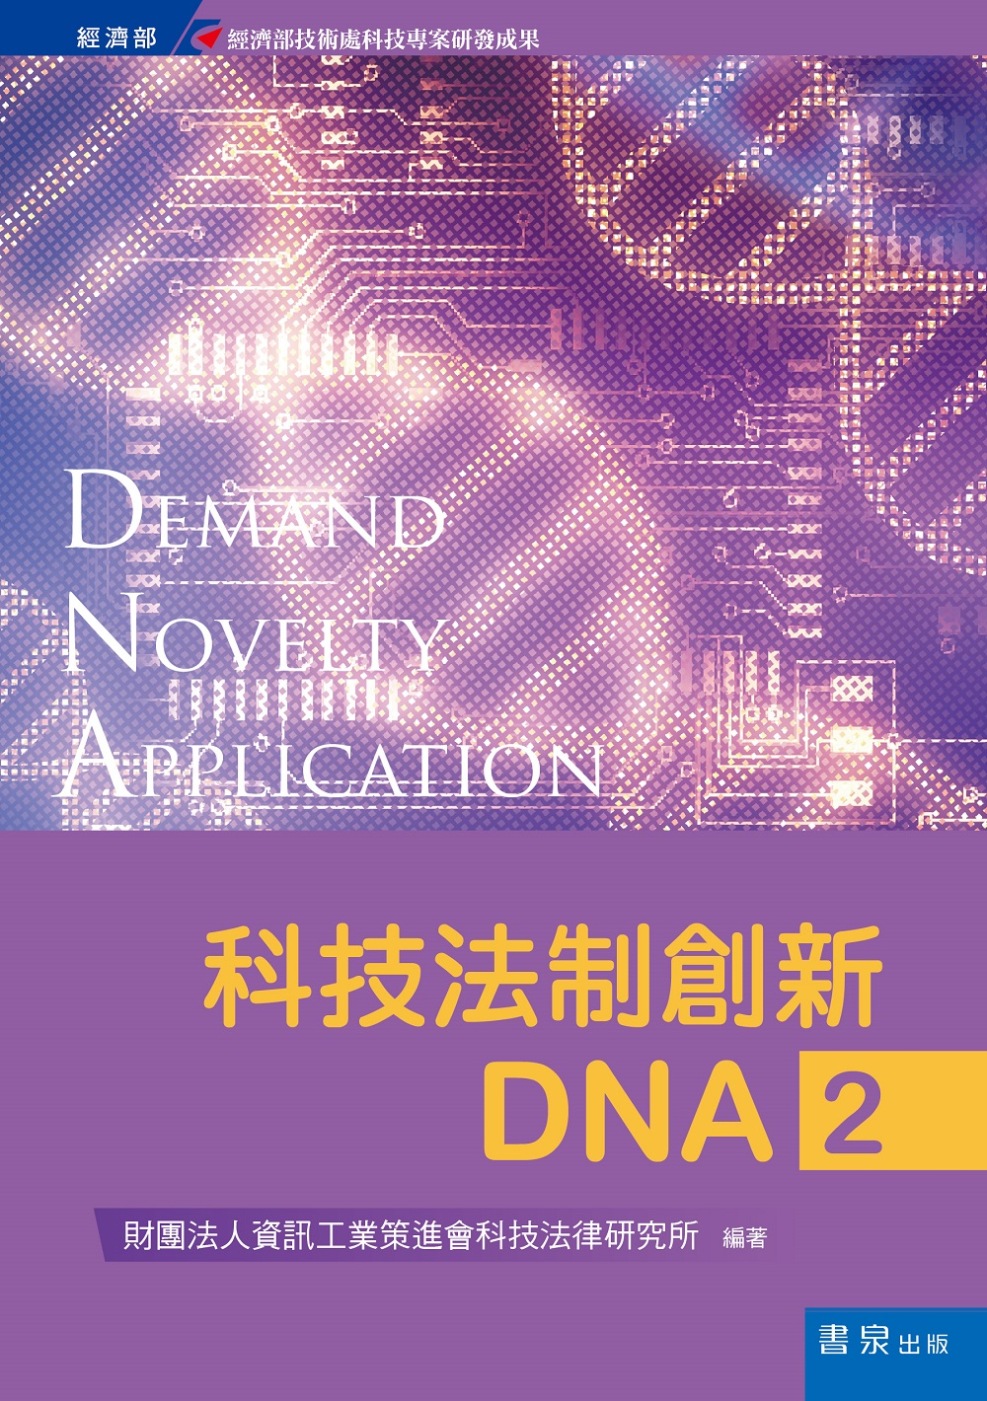 科技法制創新DNA2